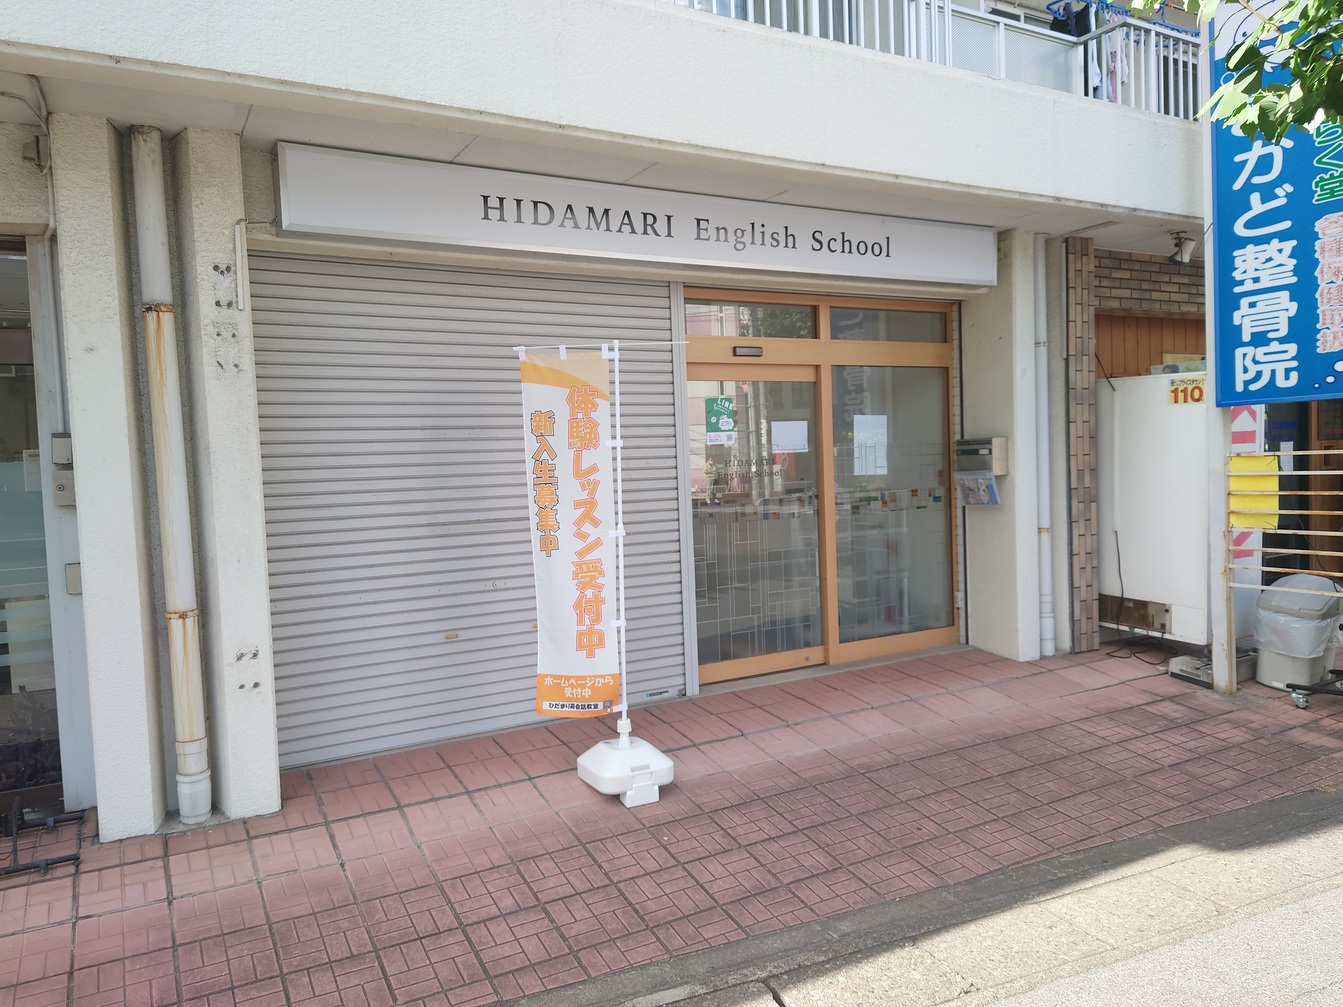 蒲生の城南コベッツがHIDAMARI English Schoolに変わっていました【がやてっく開店】